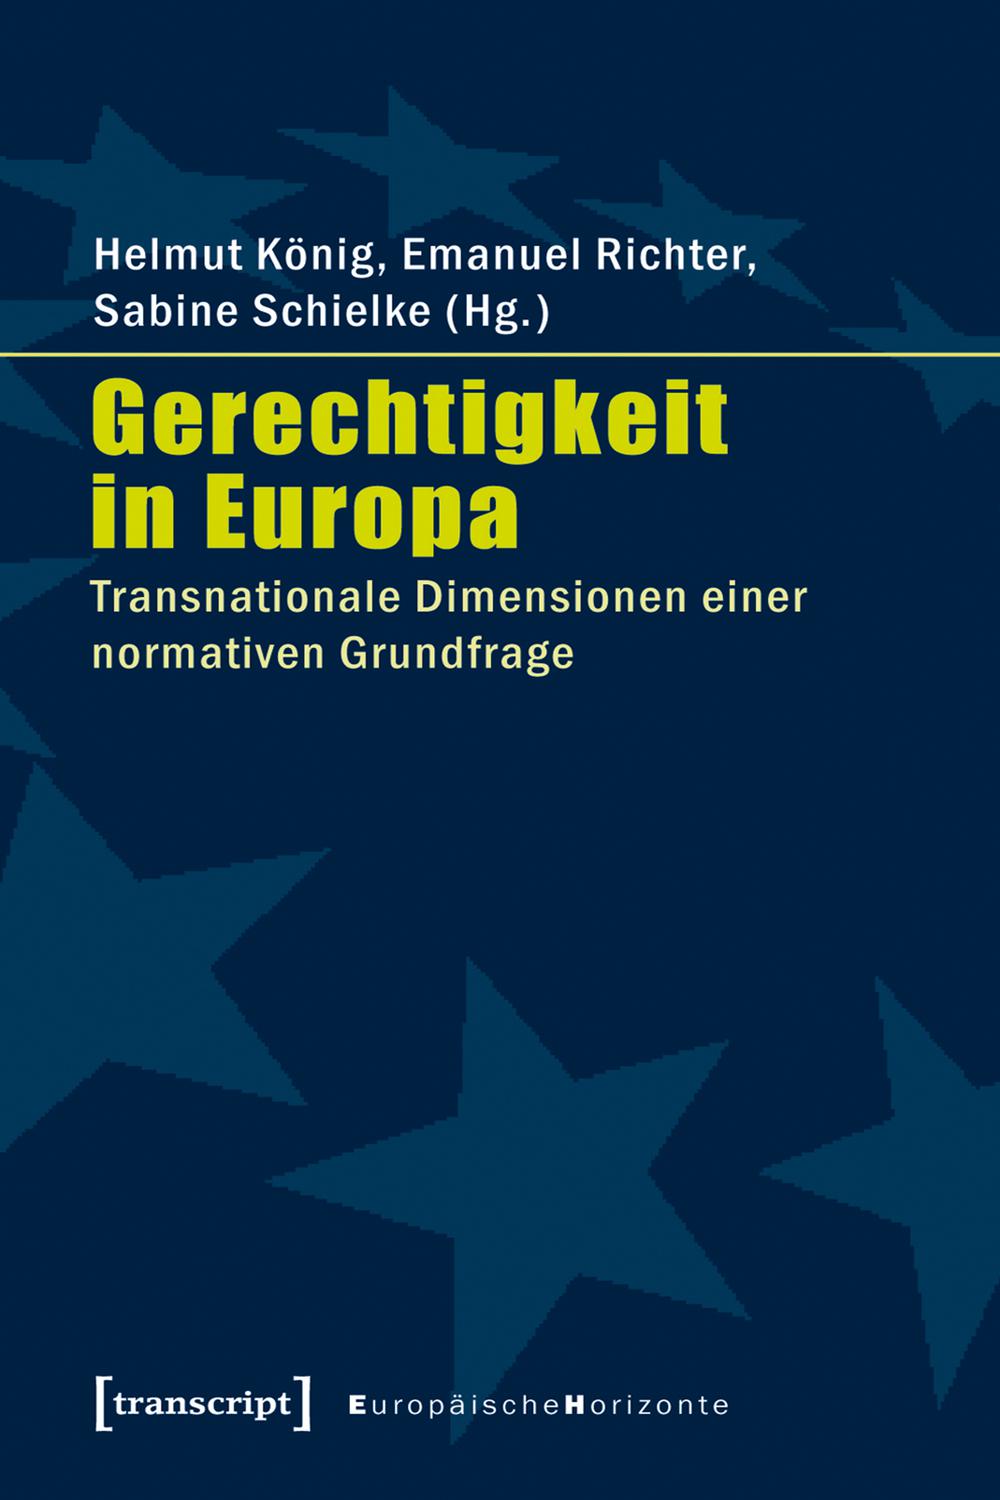 Gerechtigkeit in Europa - Helmut König, Emanuel Richter, Sabine Schielke